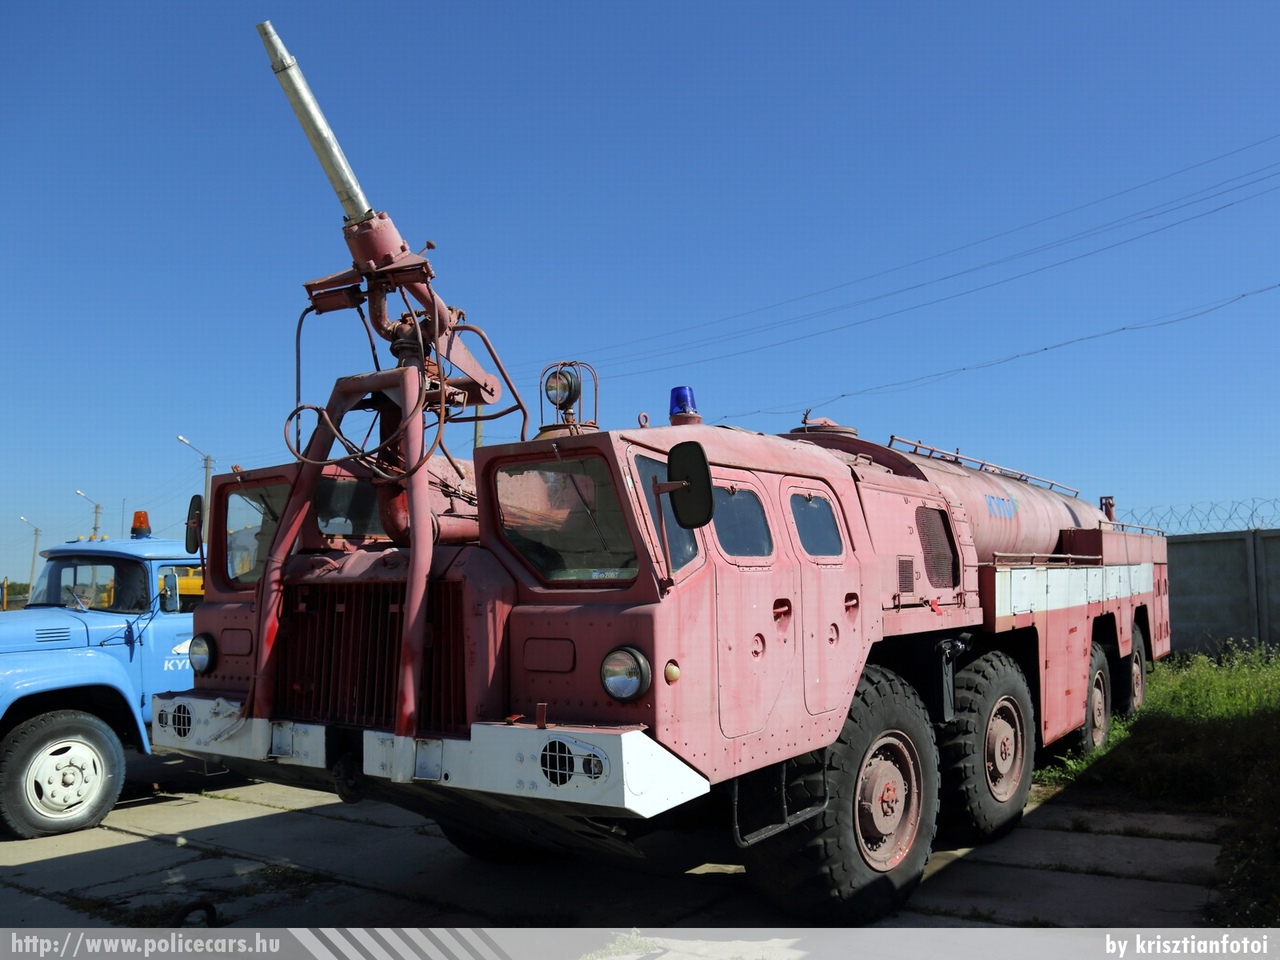 MAZ 7310 AA-60-160 Uragan, fotó: krisztianfotoi
Keywords: tûzoltó tûzoltóautó tûzoltóság ukrán Ukrajna fire firetruck Ukraine ukrainian reptéri